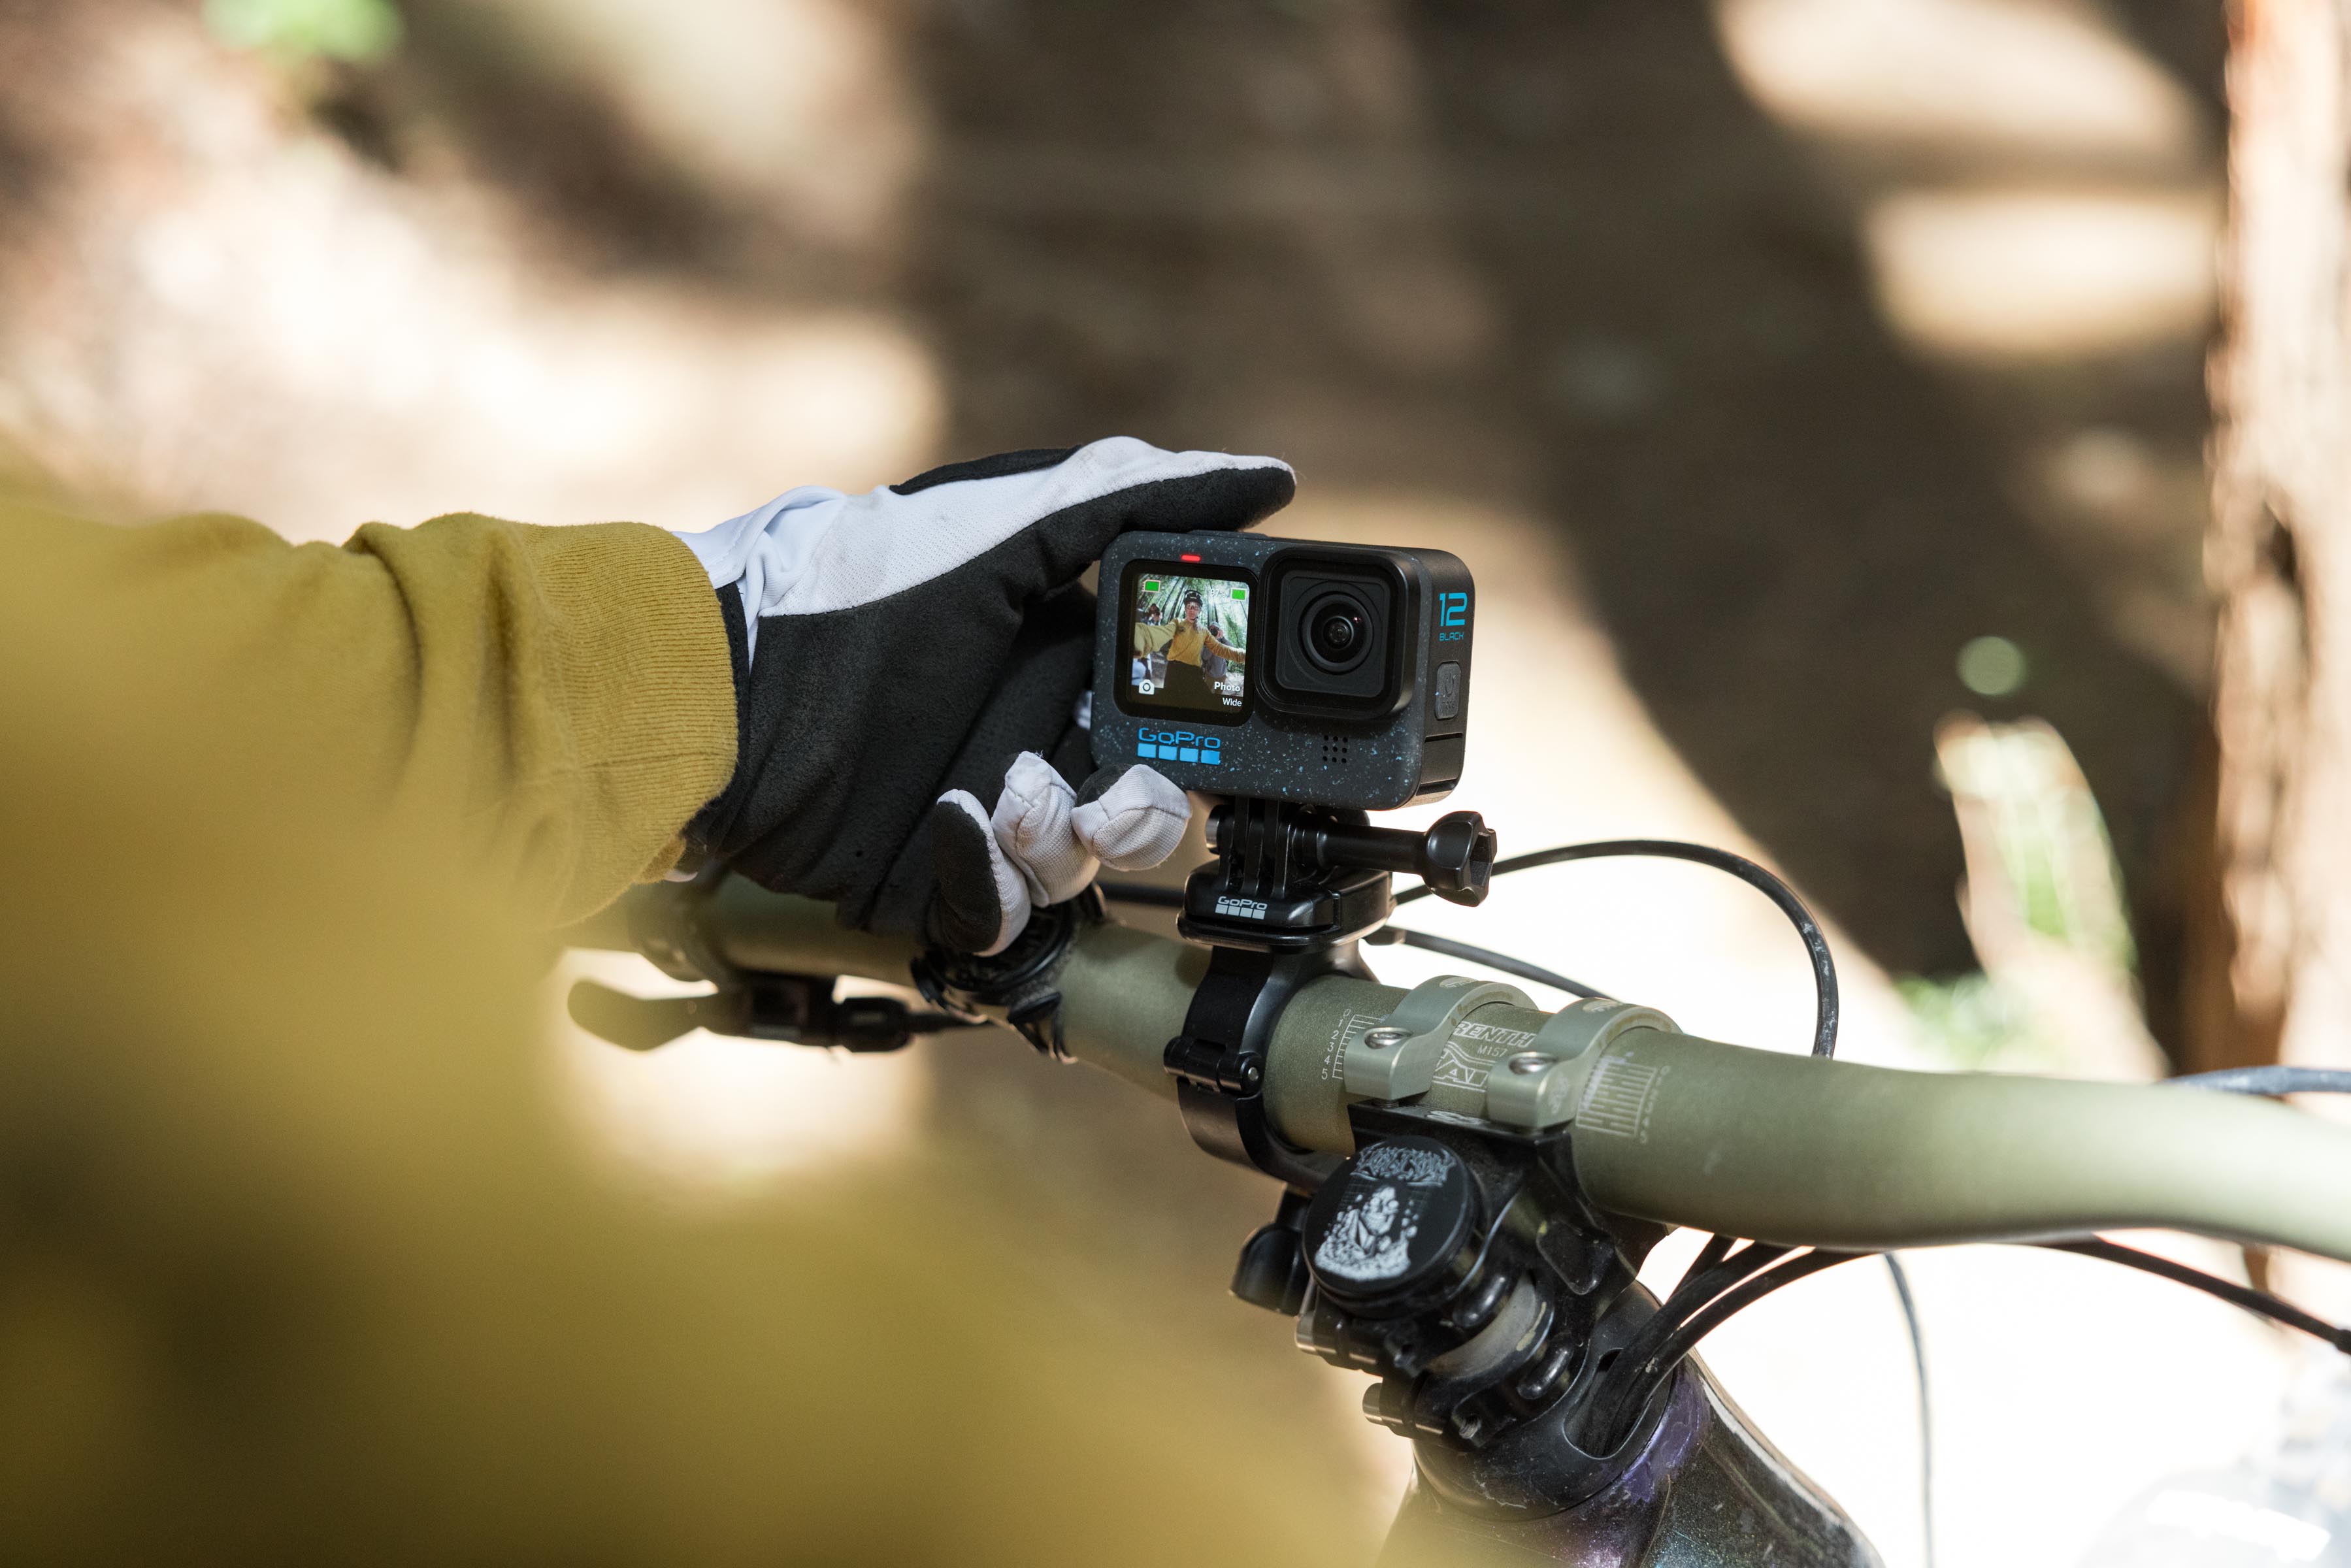 Fahrrad Lenker Vorbau Halter Halterung für Action Cam GoPro Hero8